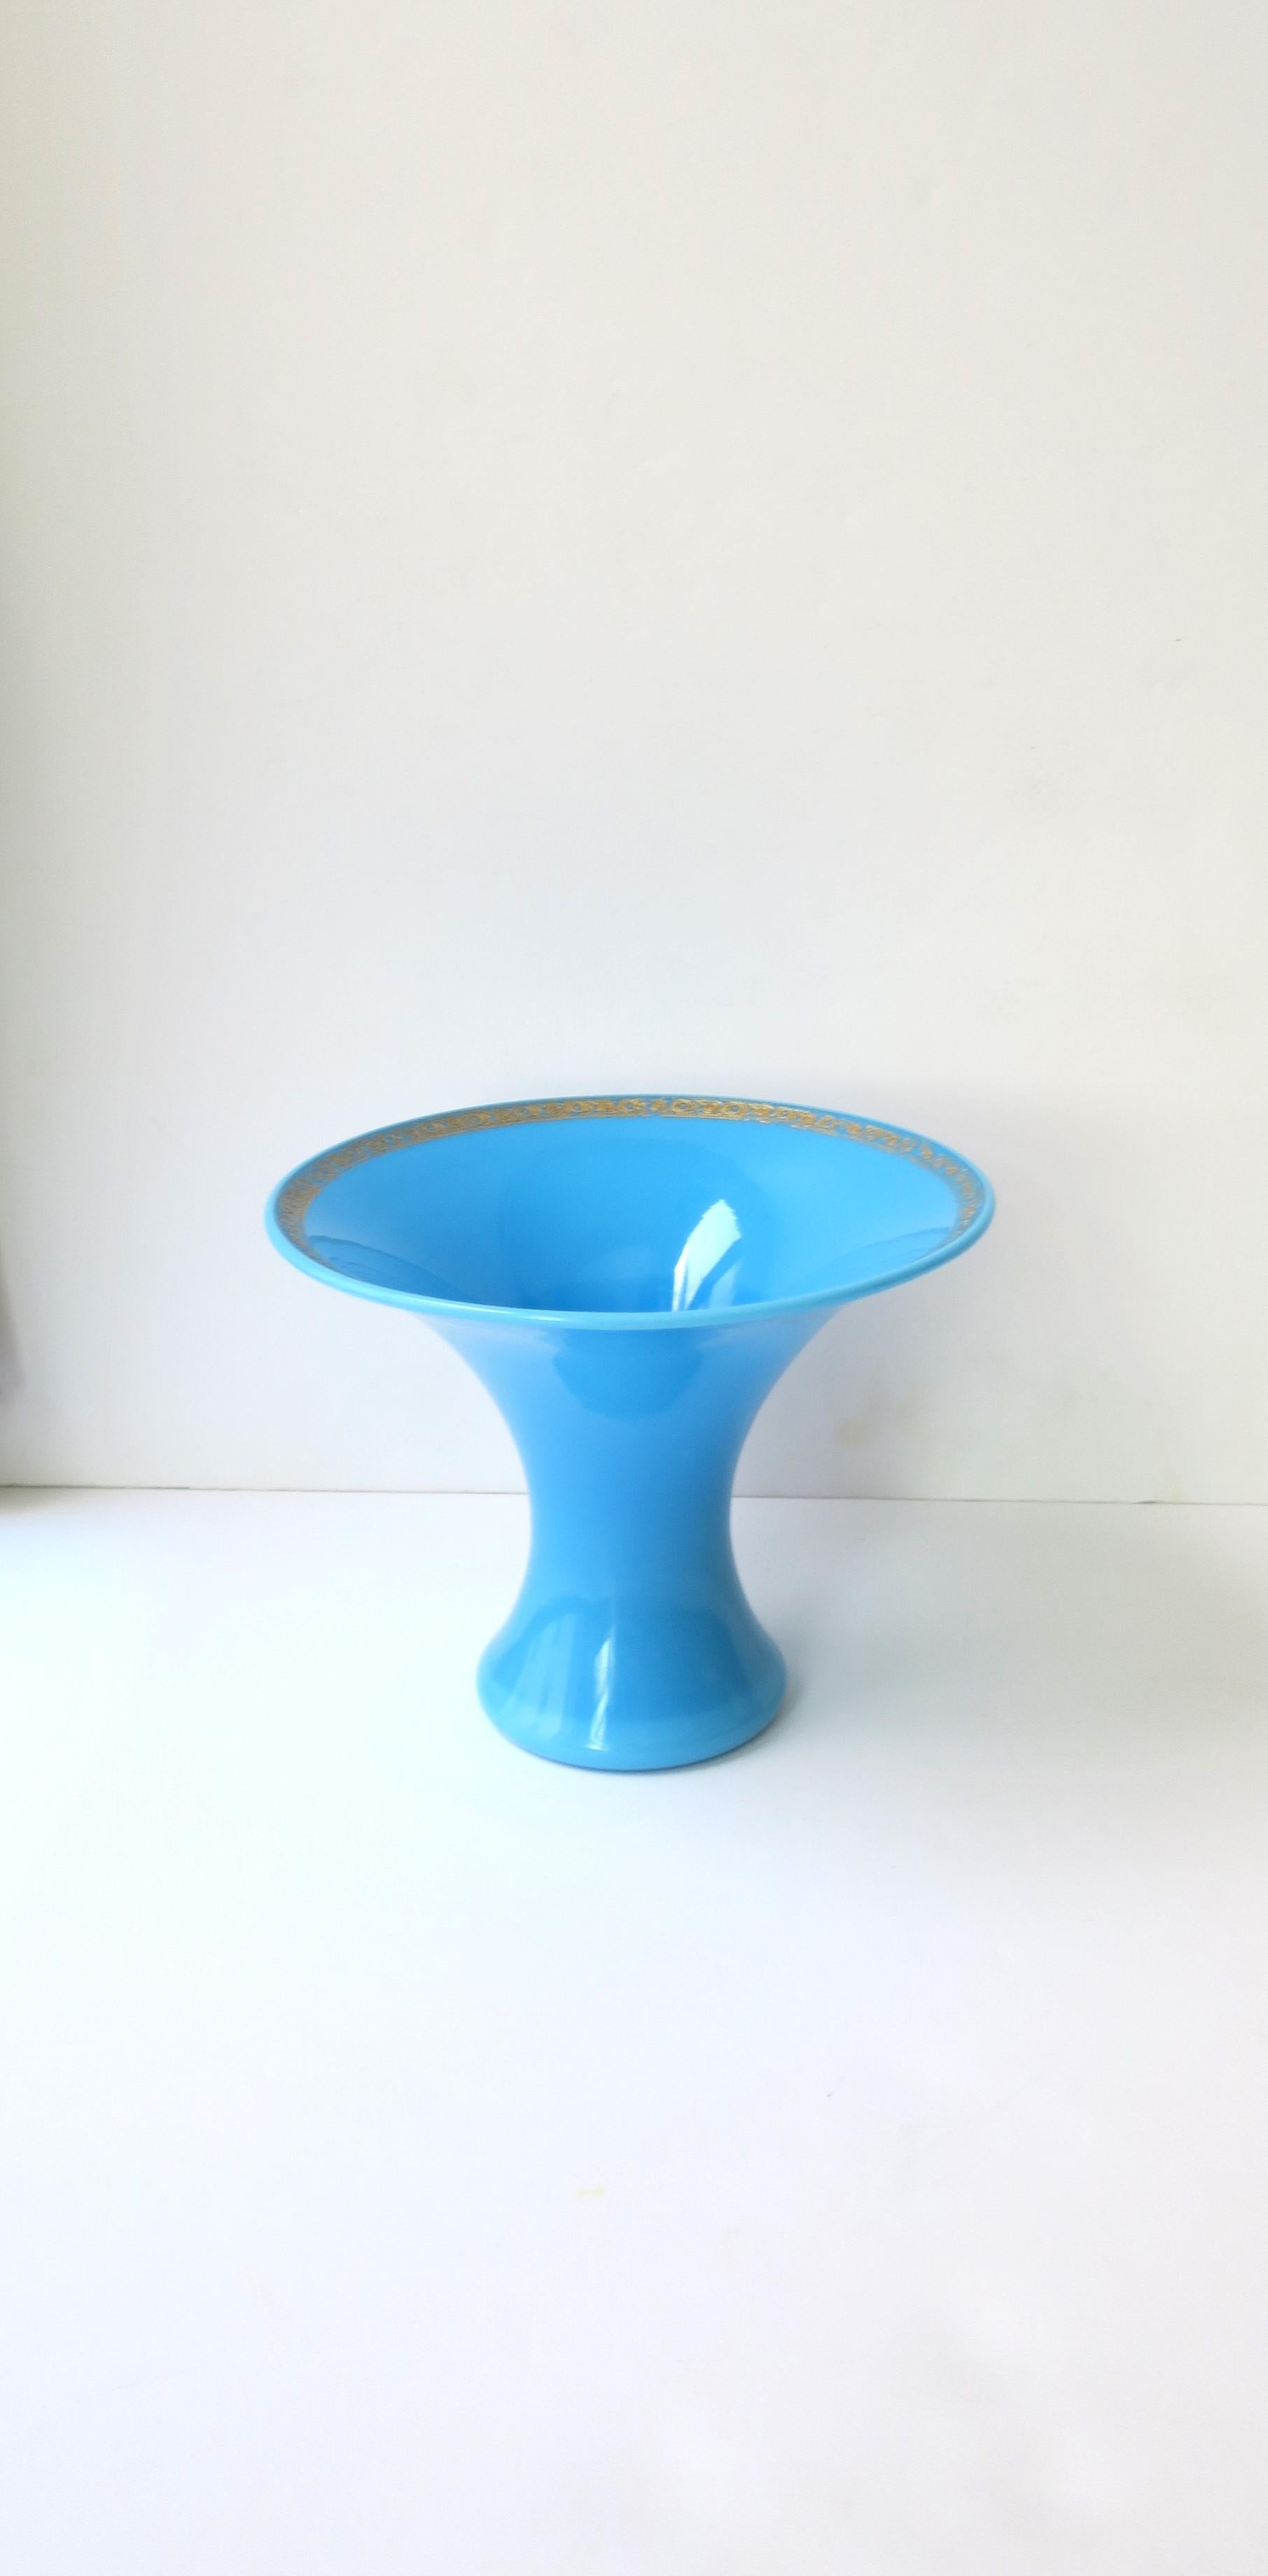 Magnifique vase italien en verre opalin bleu azur avec des détails dorés autour de la lèvre, vers le milieu du XXe siècle, 1960, Italie. Magnifique comme pièce unique ou avec des fleurs. Le vase a un beau diamètre supérieur pour soutenir le bouquet,